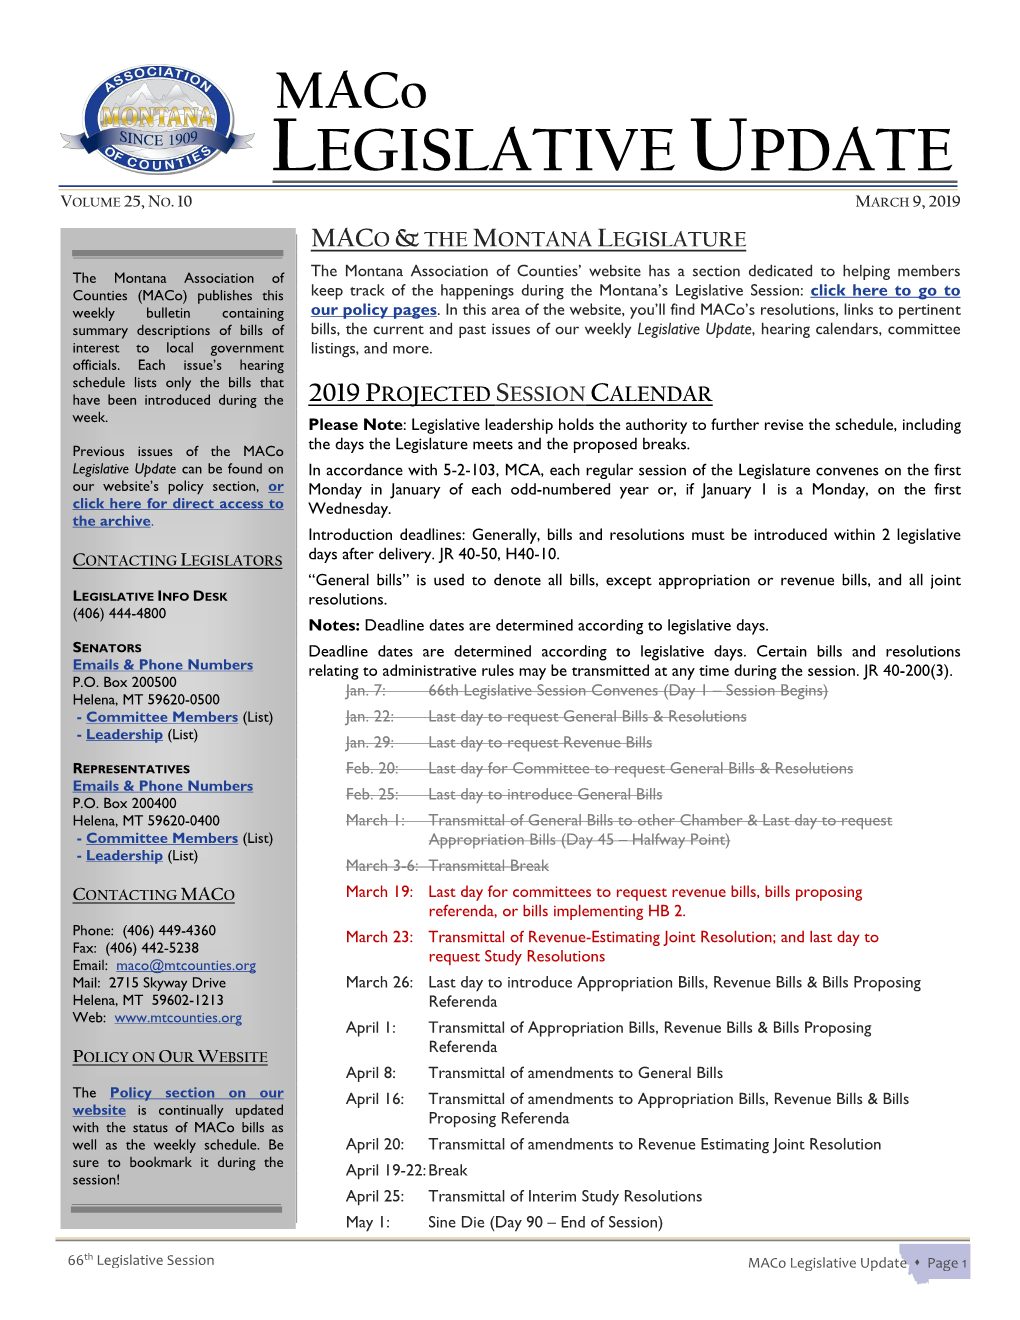 Maco Legislative Update, Volume 25 No. 10, March 9, 2019